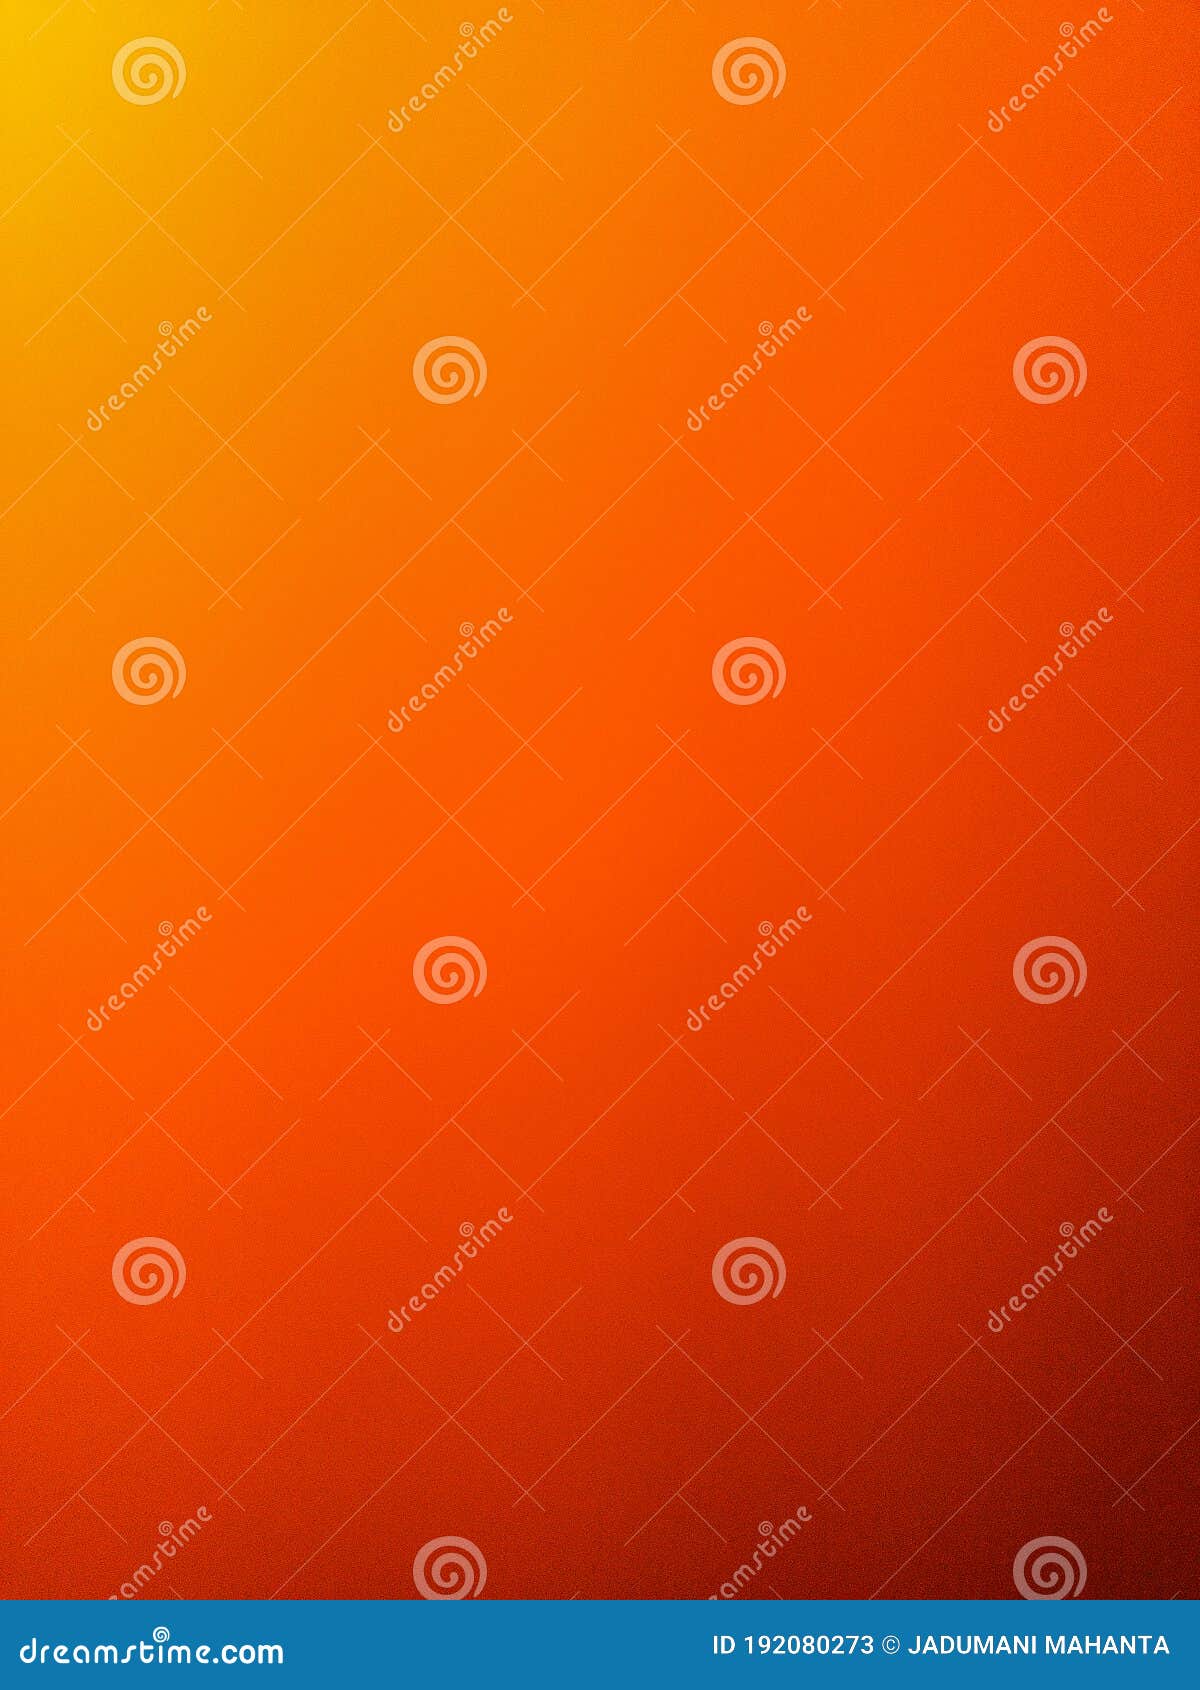 Nền màu cam: Nếu bạn muốn tìm kiếm một nền trang trí với màu sắc tươi sáng và đầy sức sống, thì một nền màu cam chắc chắn sẽ là một lựa chọn tuyệt vời. Hãy để bức ảnh này làm nền cho những kỉ niệm đáng nhớ của bạn.